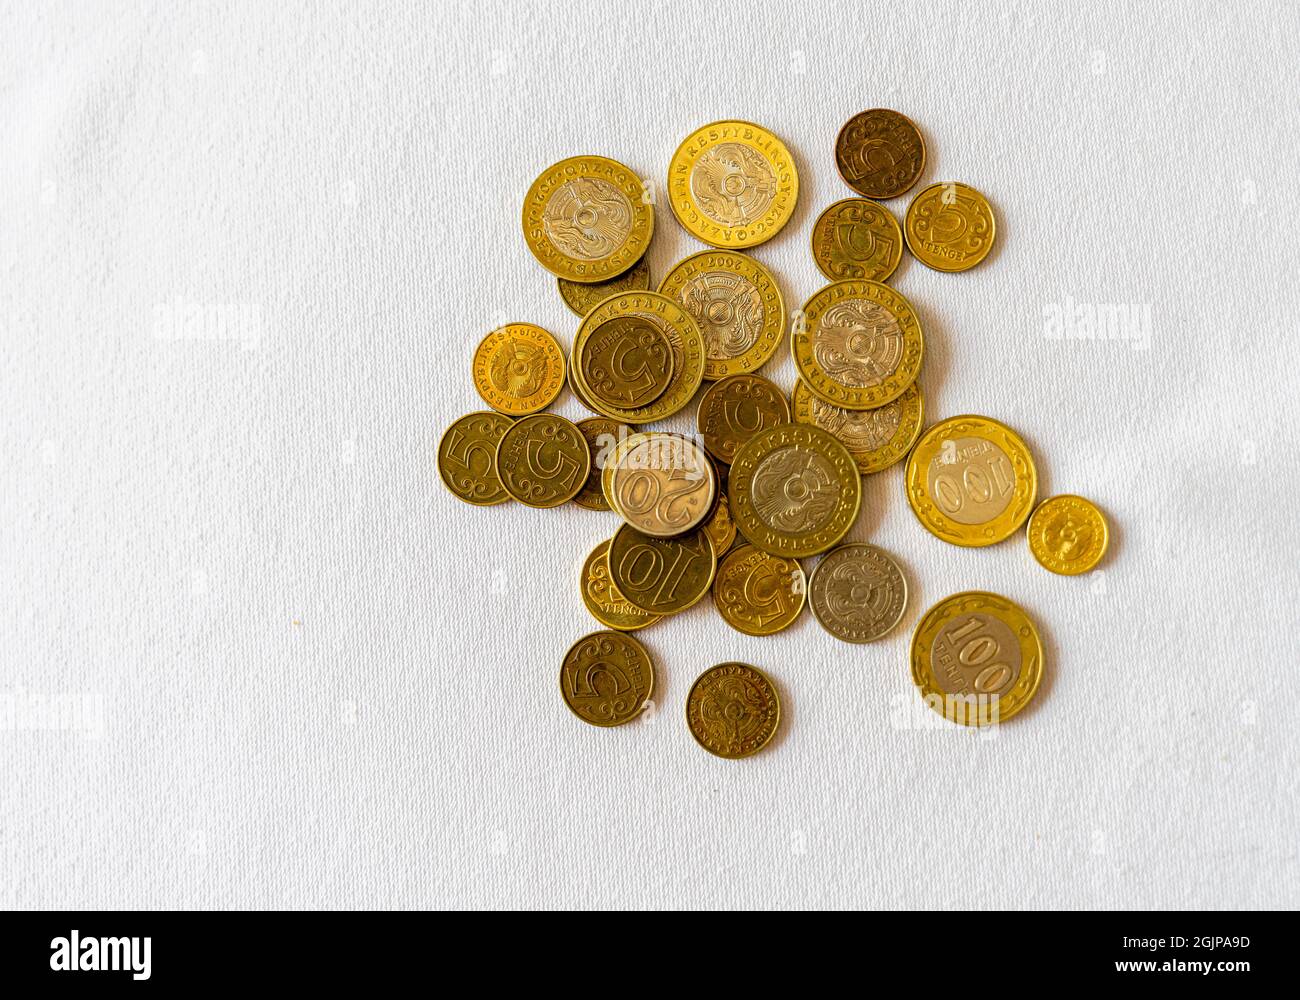 Kazakhstan tenge coins on white background Stock Photo